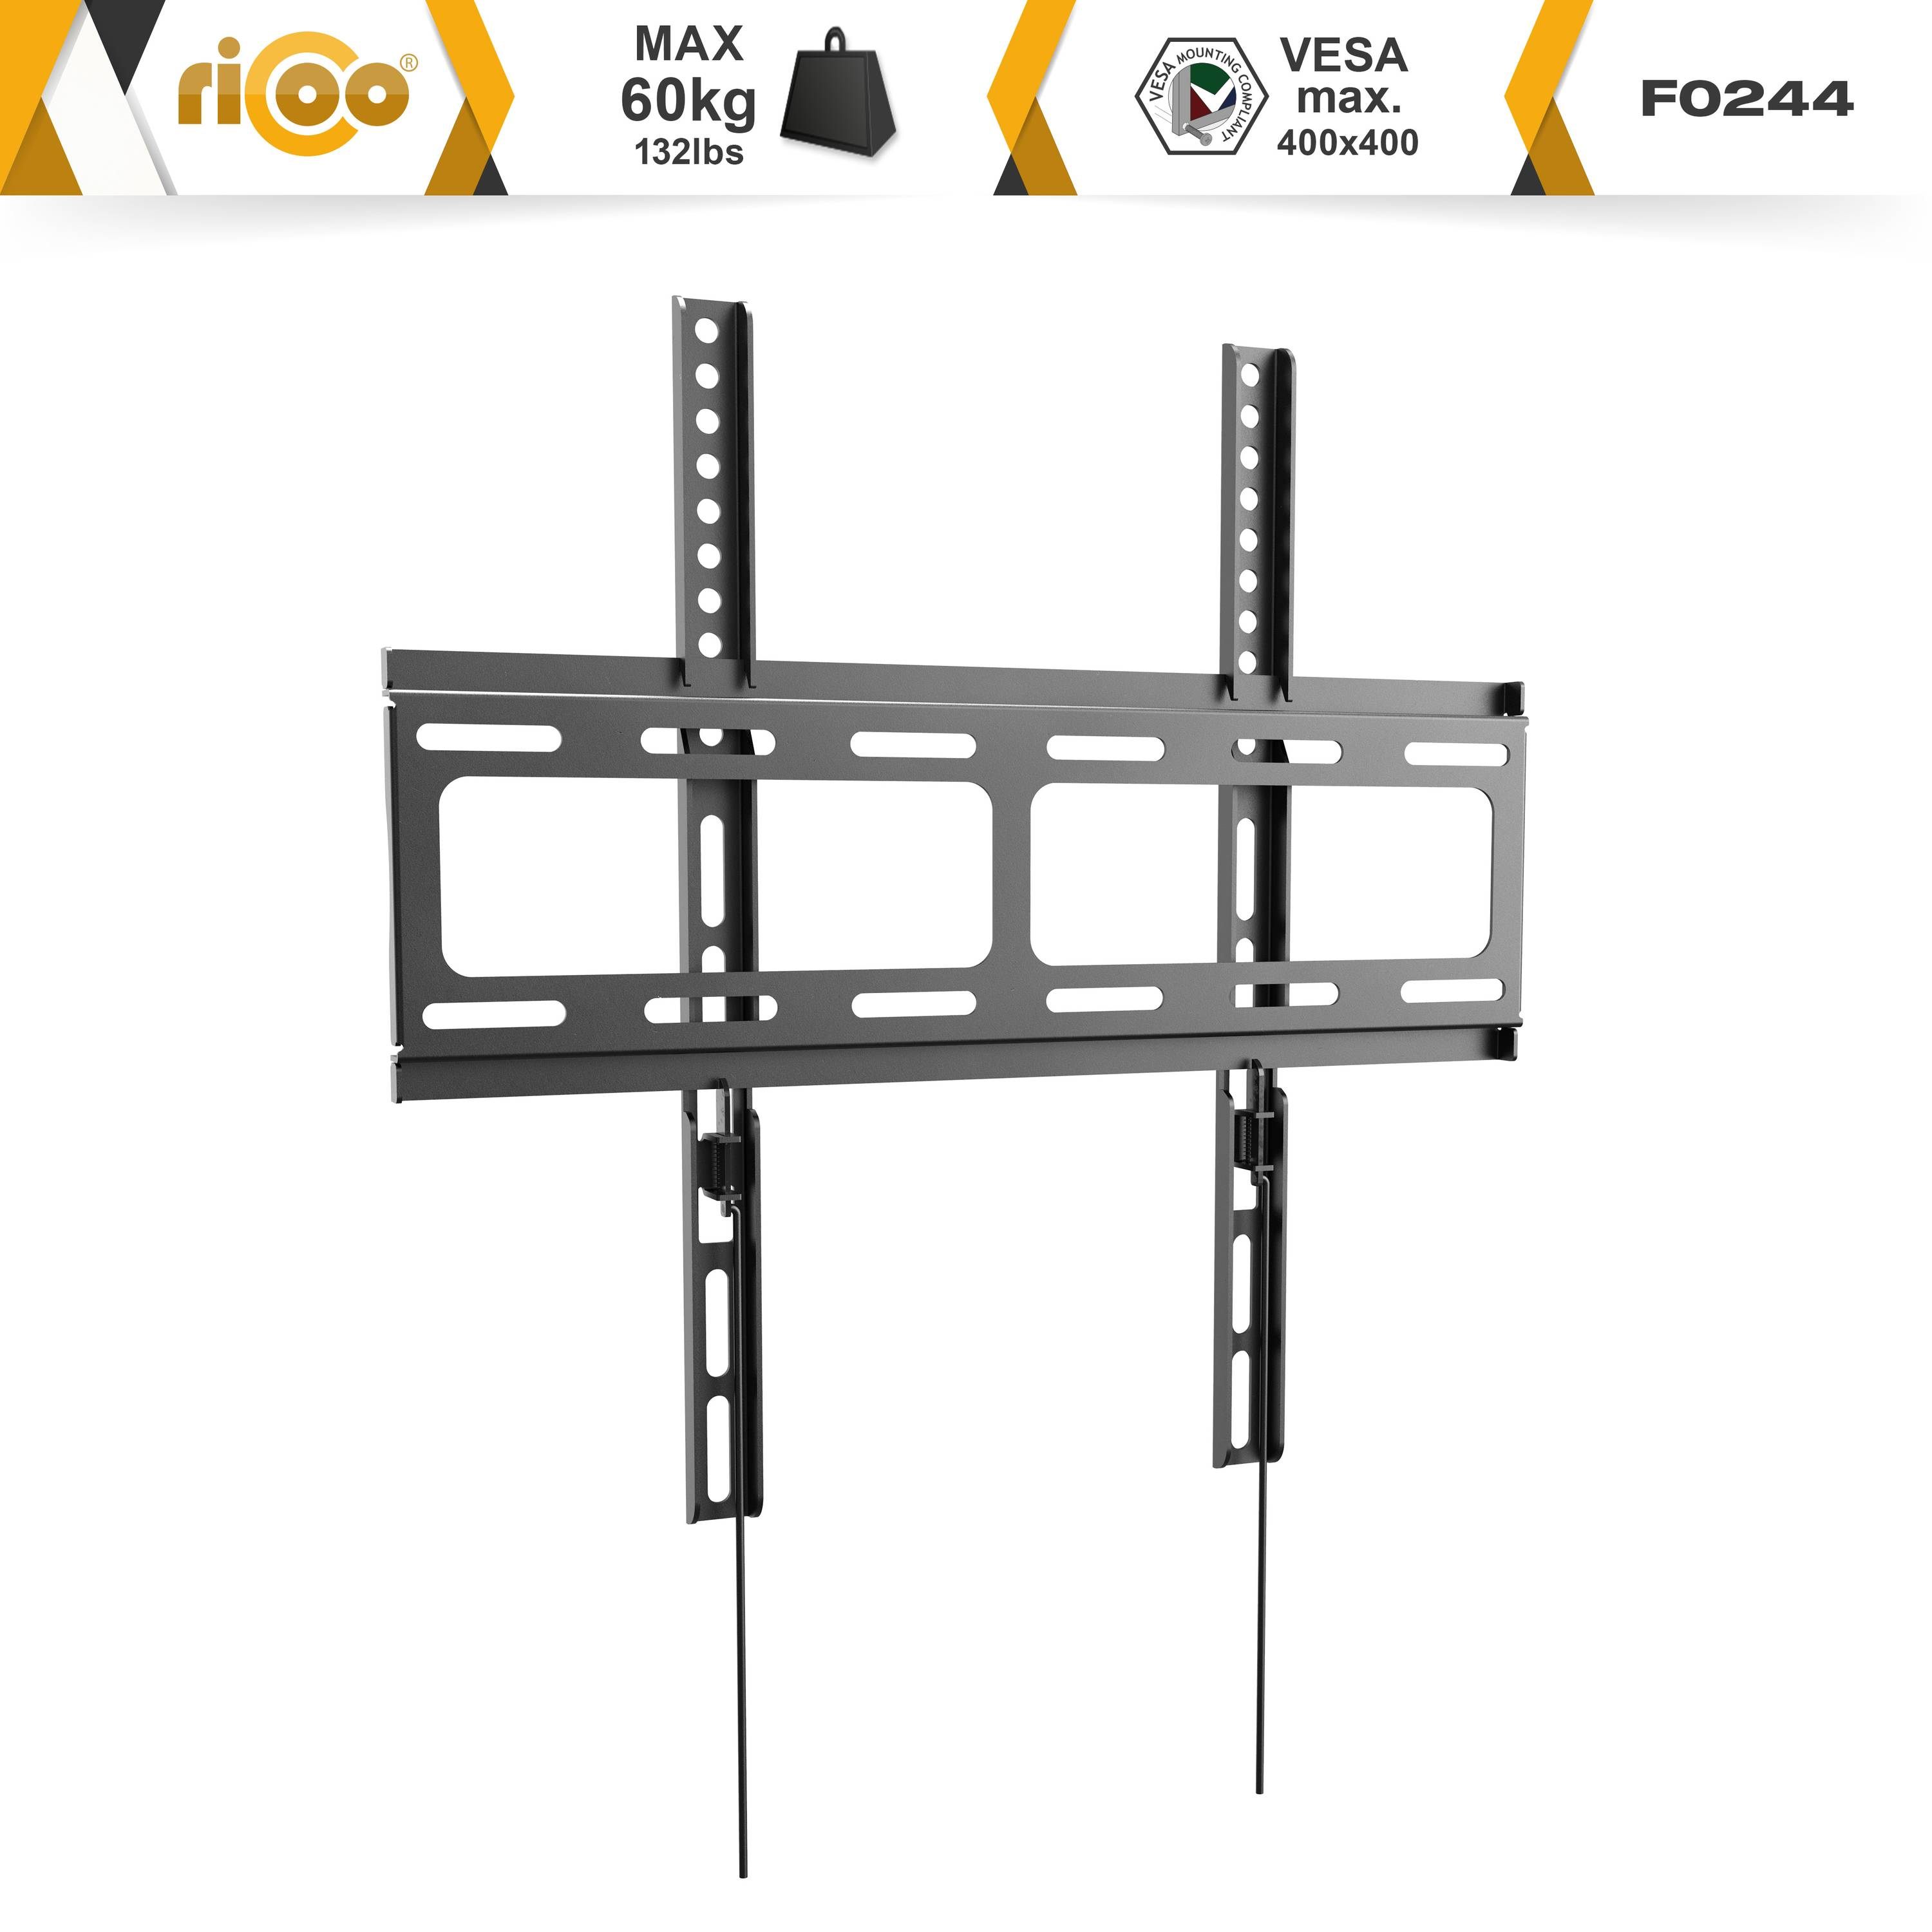 Wand flach x Wandhalterung, 400 TV 400 Schwarz bis auch universal für Fernseher curved VESA F0244 Halterung RICOO